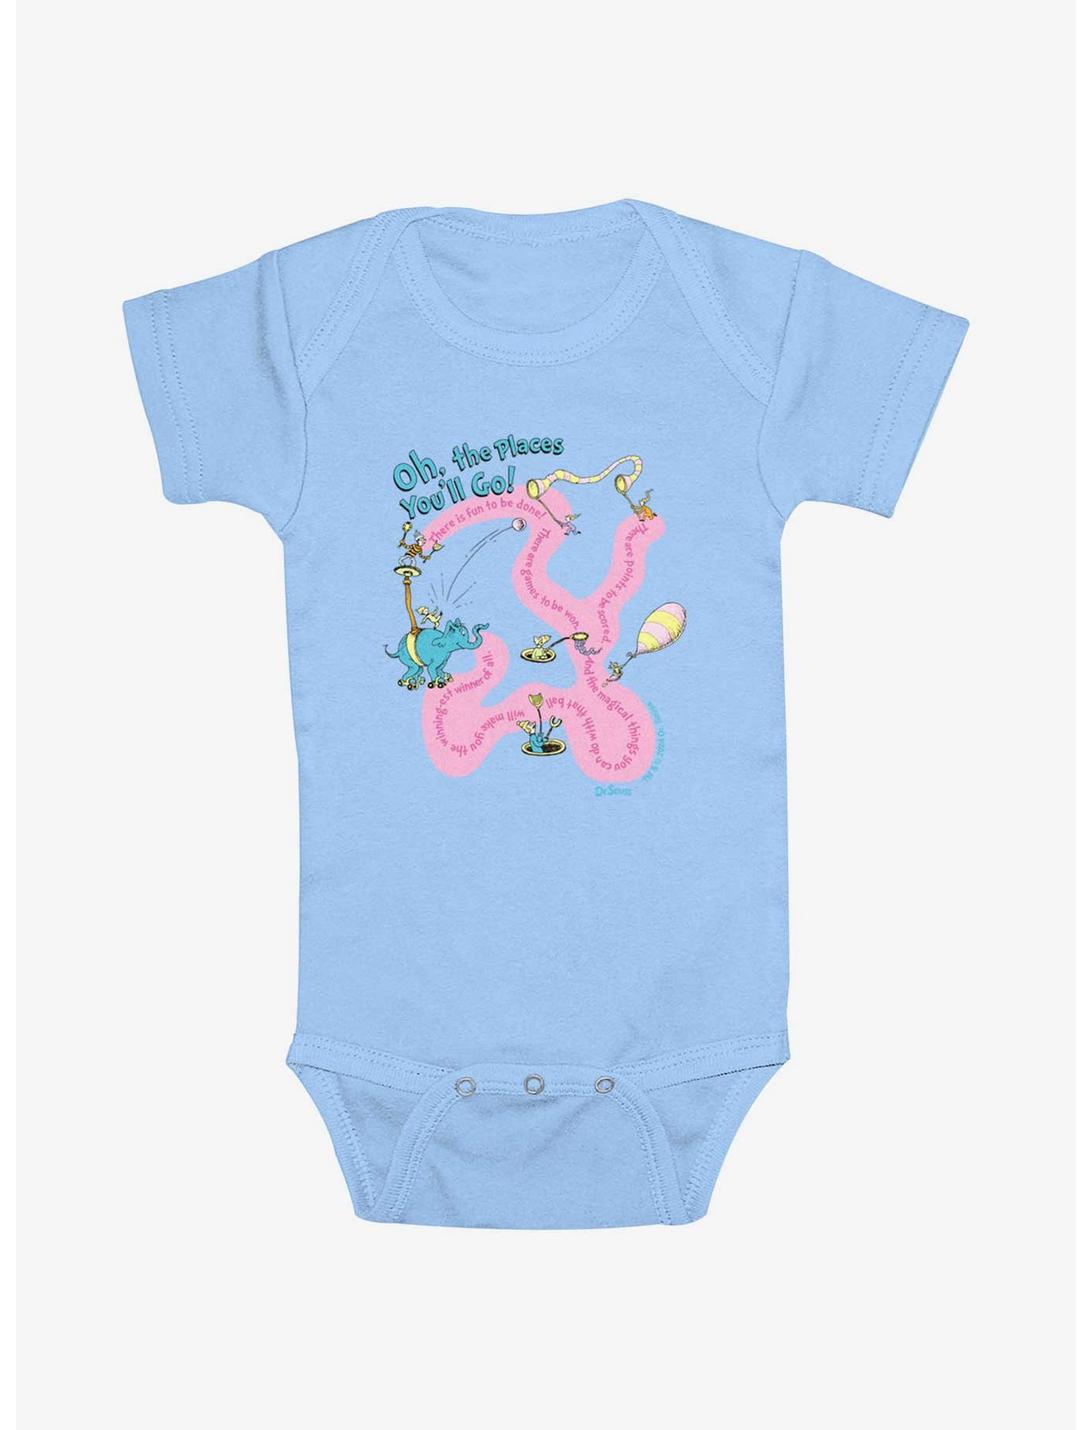 Dr. Seuss Journeying Infant Bodysuit, LT BLUE, hi-res